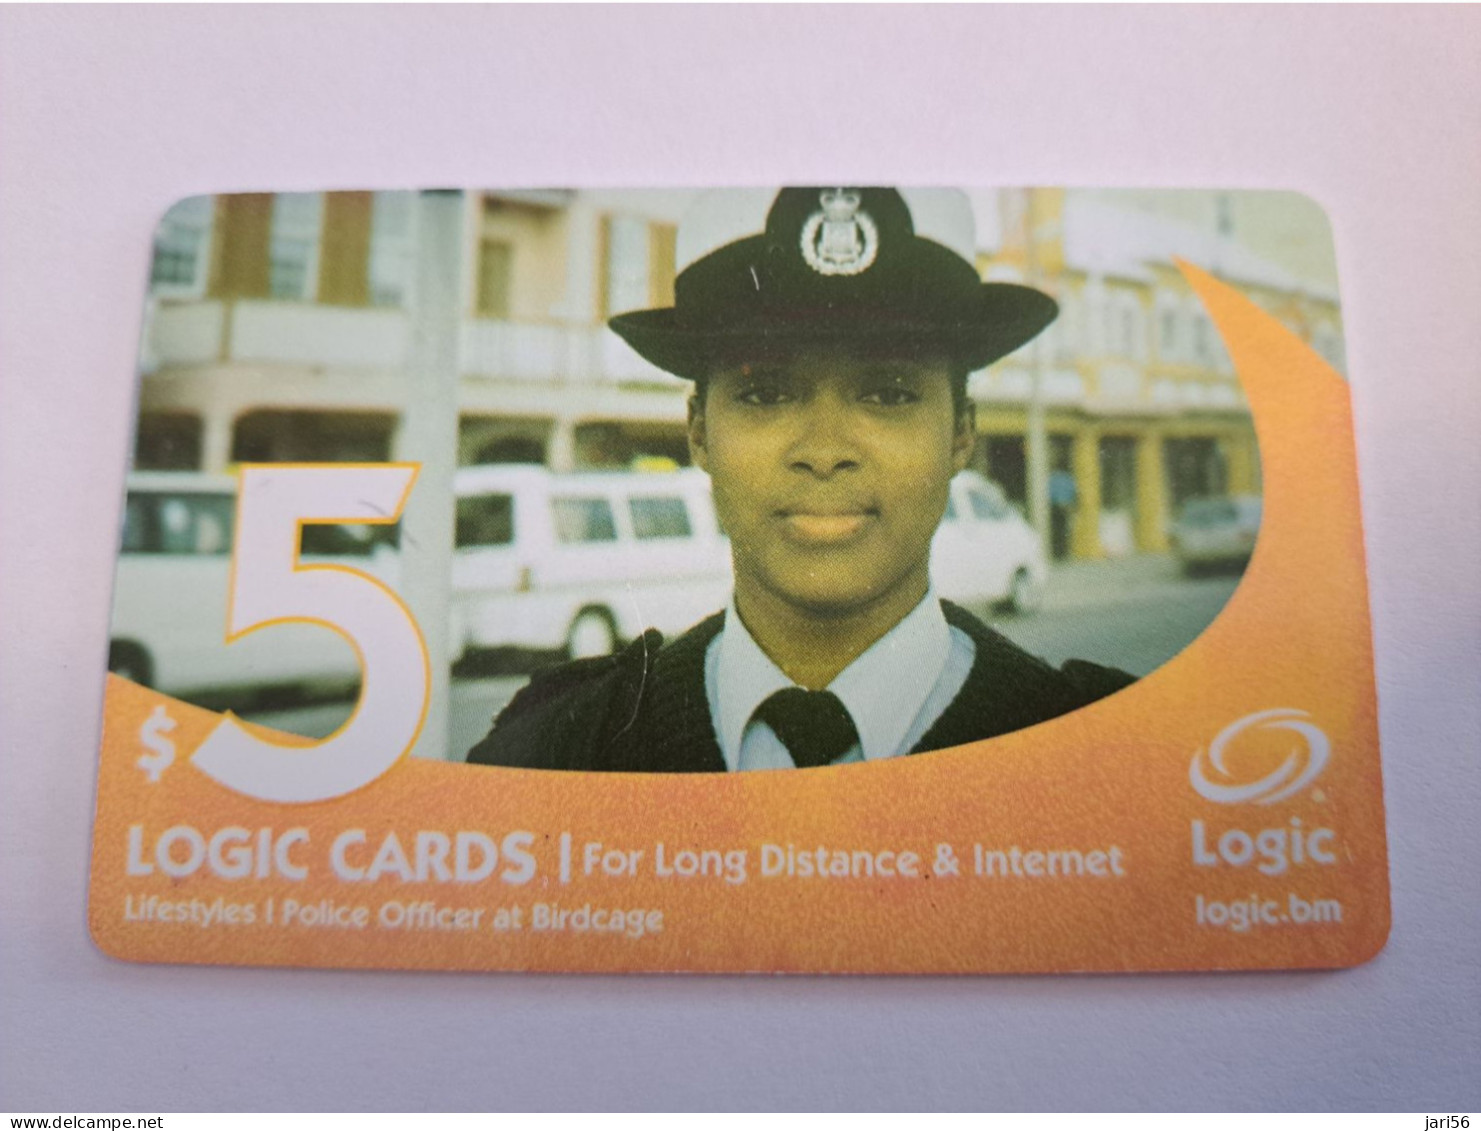 BERMUDA  $ 5,-  LOGIC/  POLICE LADY   IN BERMUDA / DATE 4 /2005 / 9700 EX   PREPAID CARD  Fine USED  **16193** - Bermude